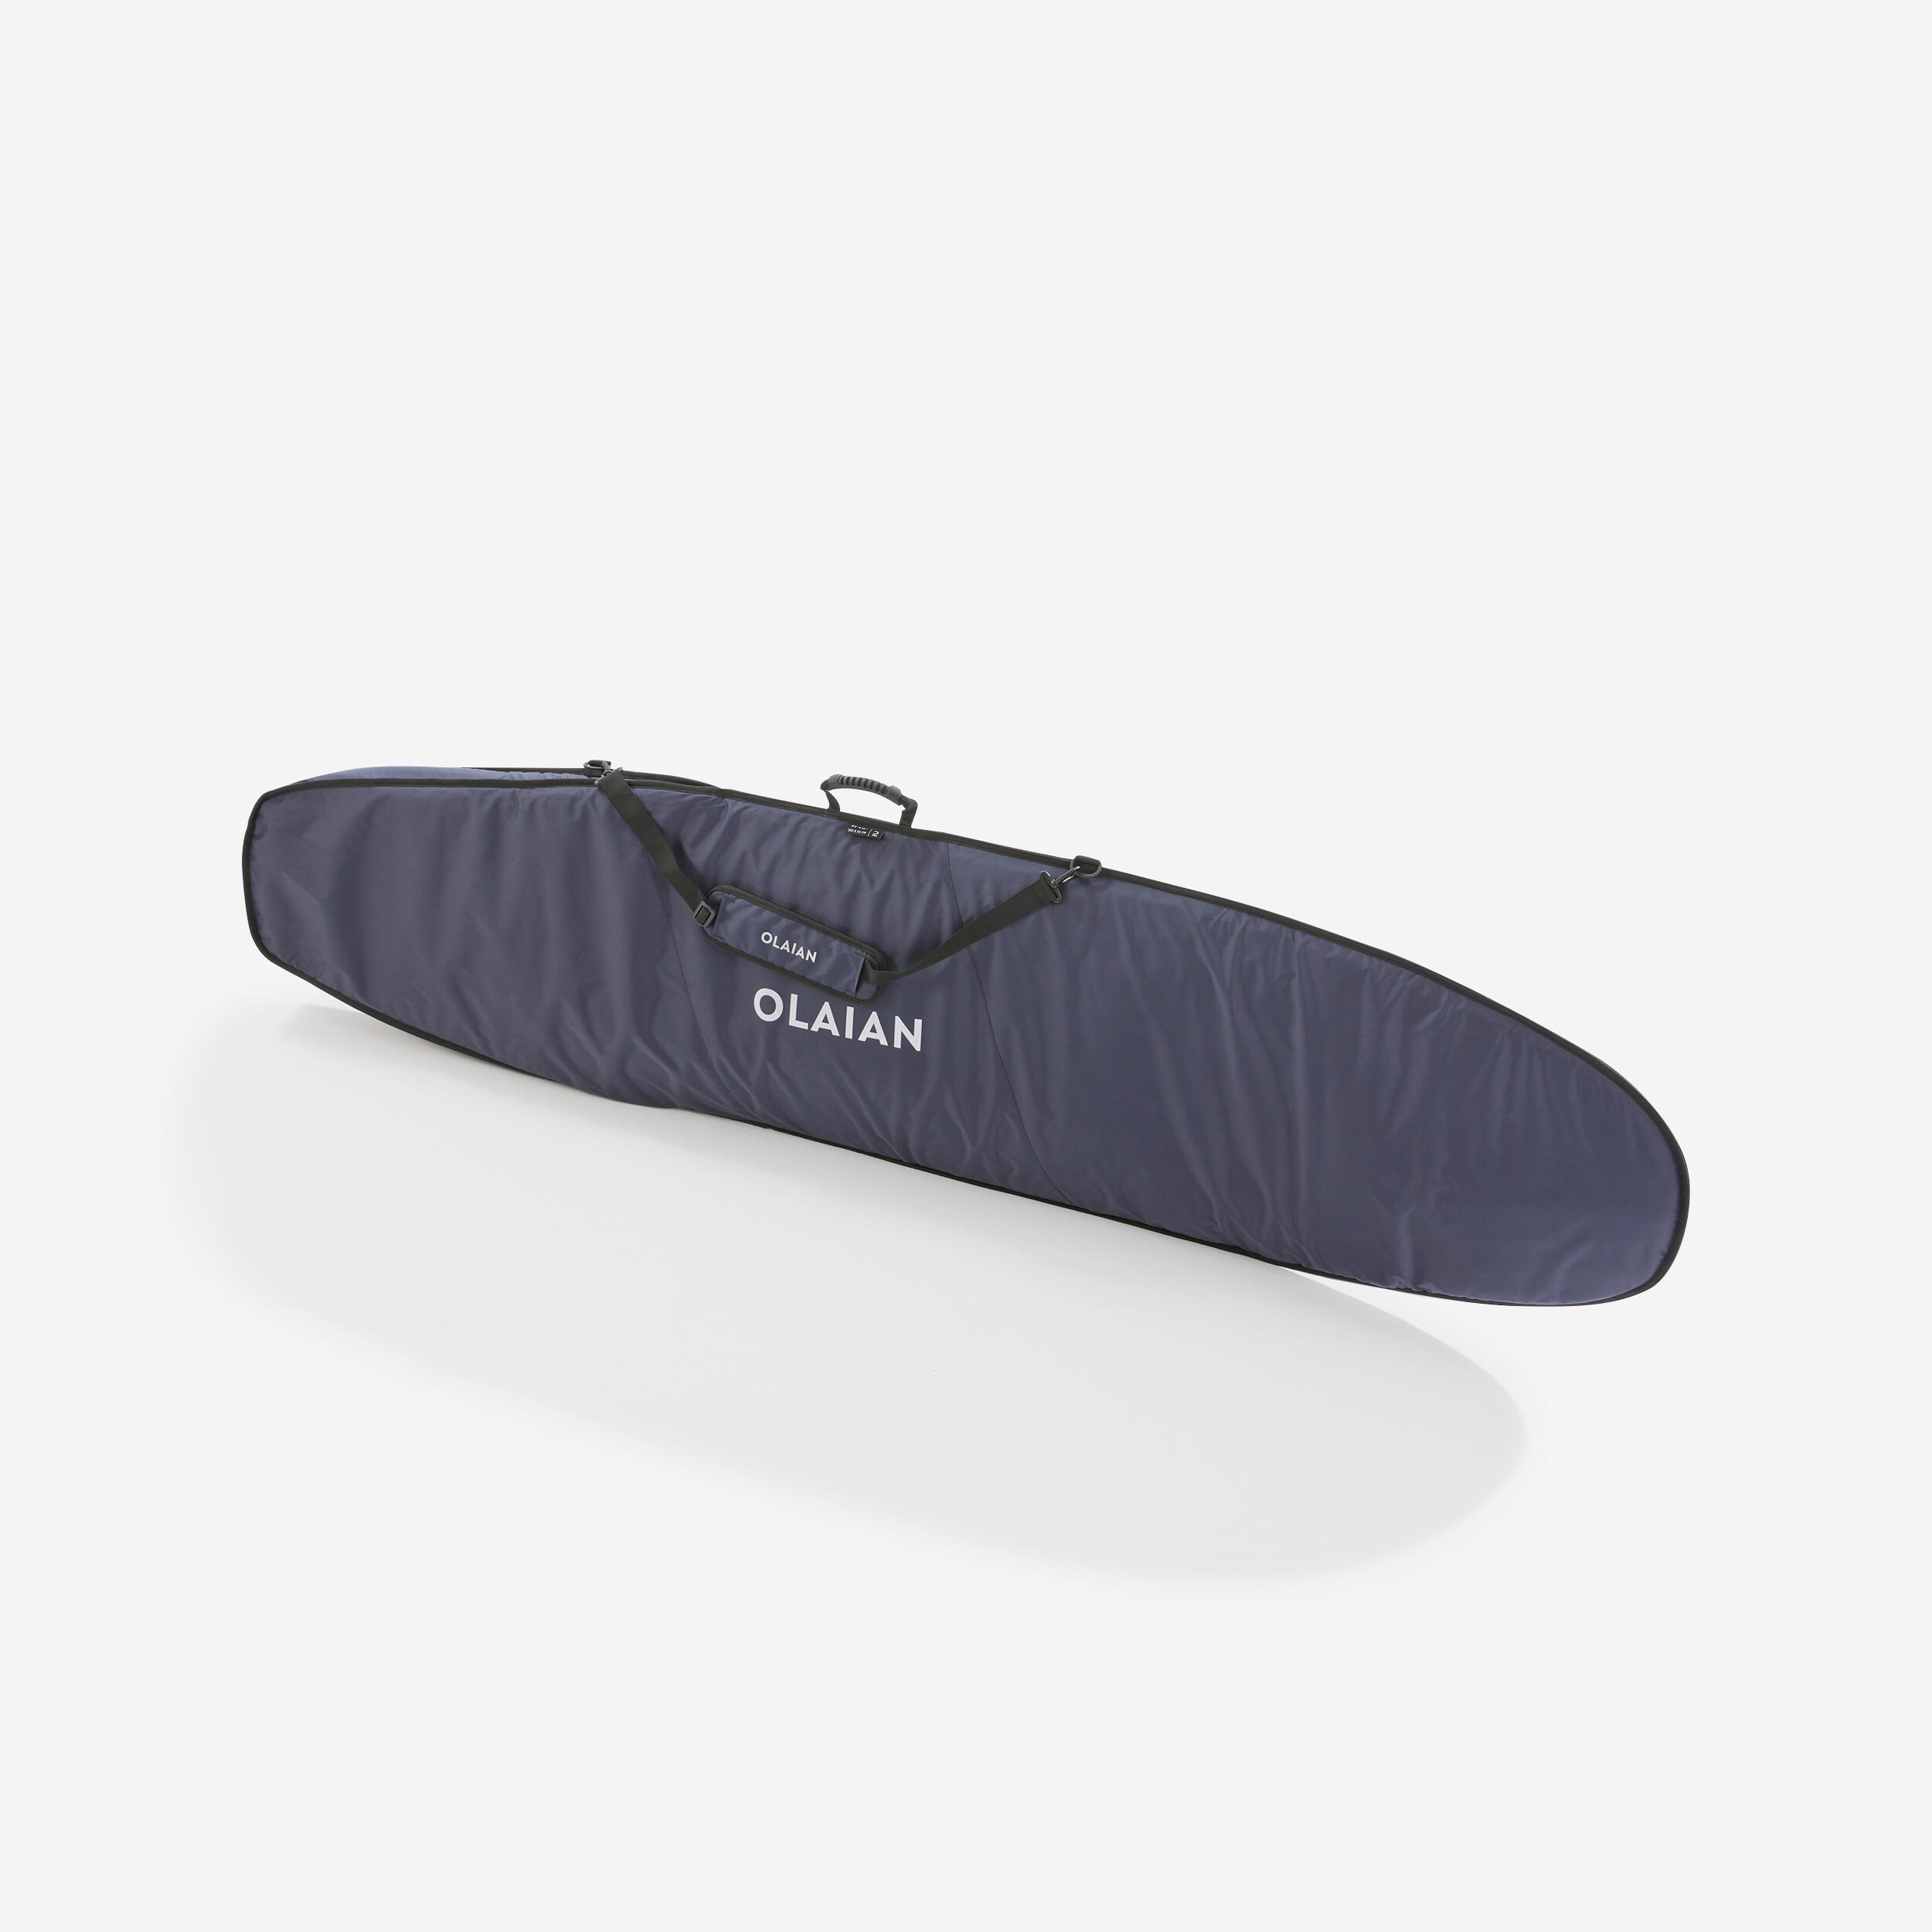 OLAIAN Boardbag Schutzhülle 900 Reisetasche für Surfboard max. 8'2